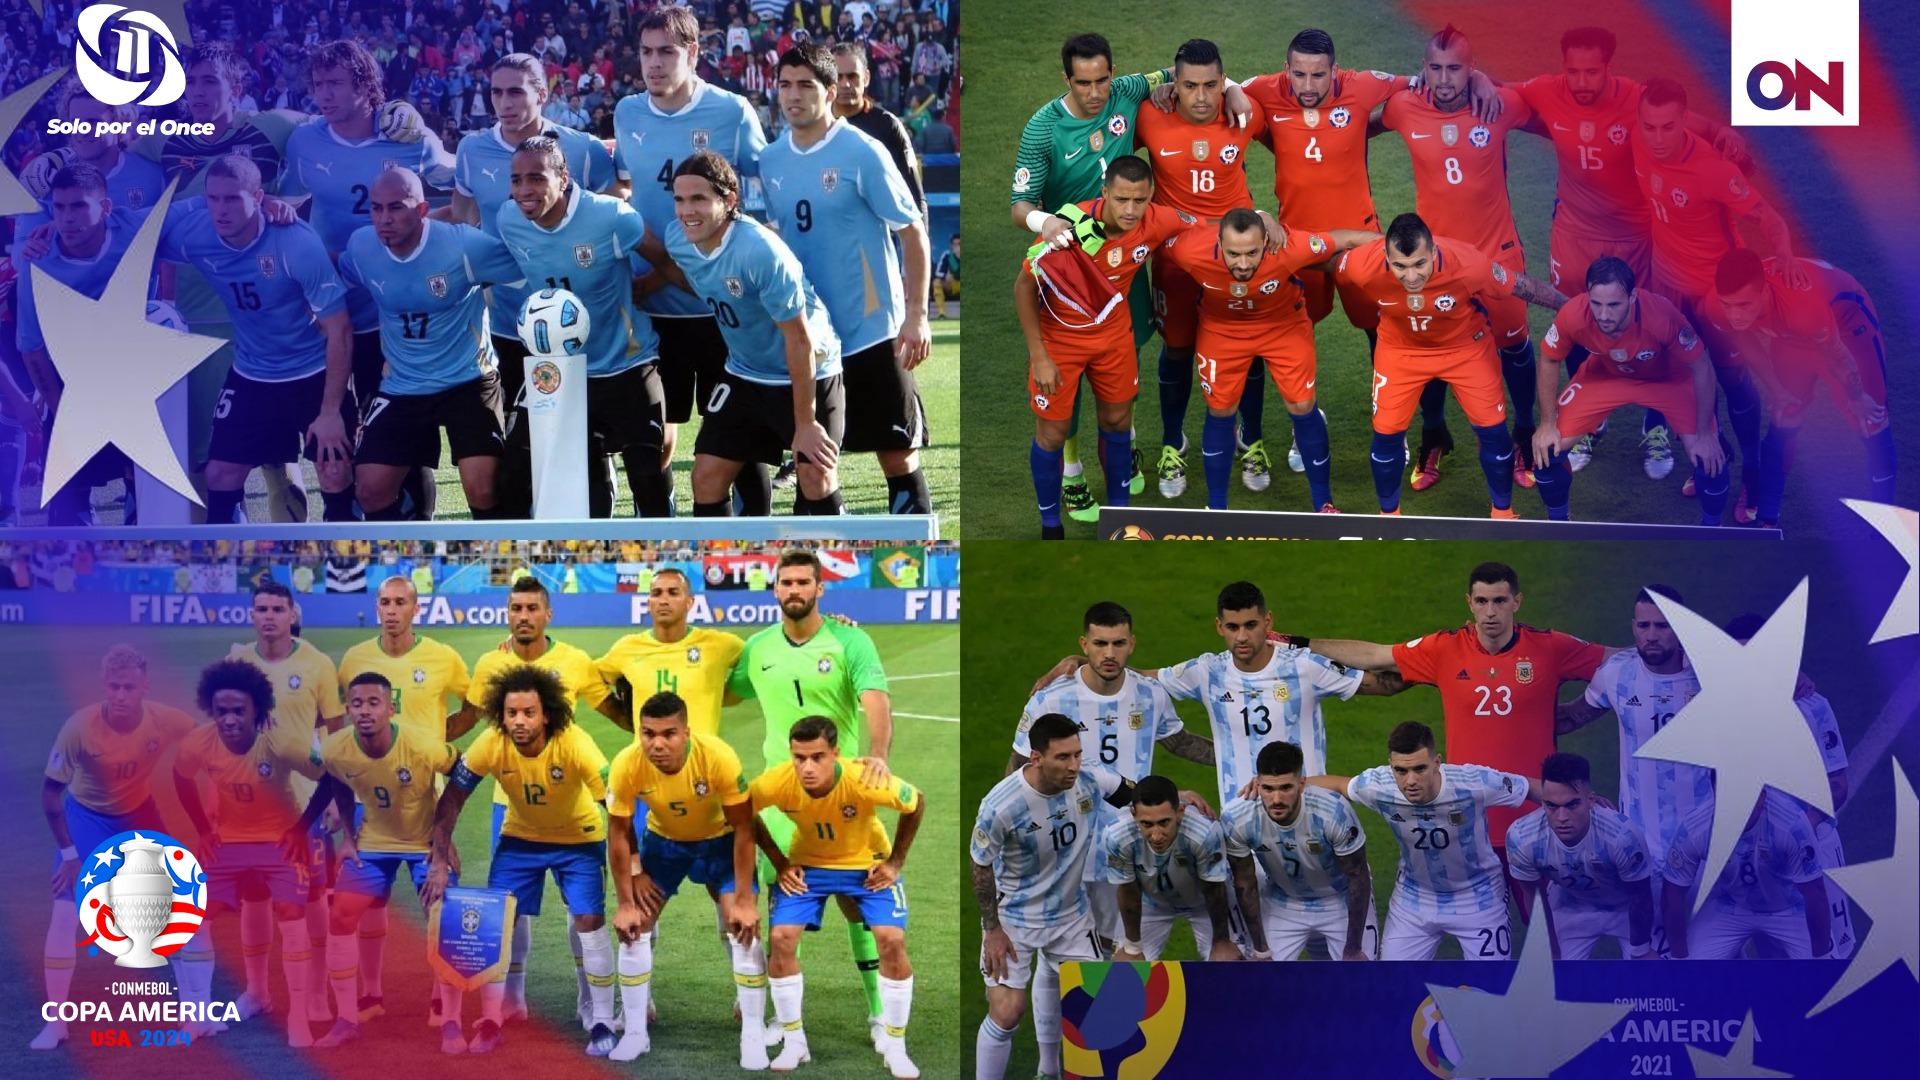 La Copa América es el torneo de fútbol más antiguo del mundo deportivo y es uno de los eventos más importante de Sudamérica